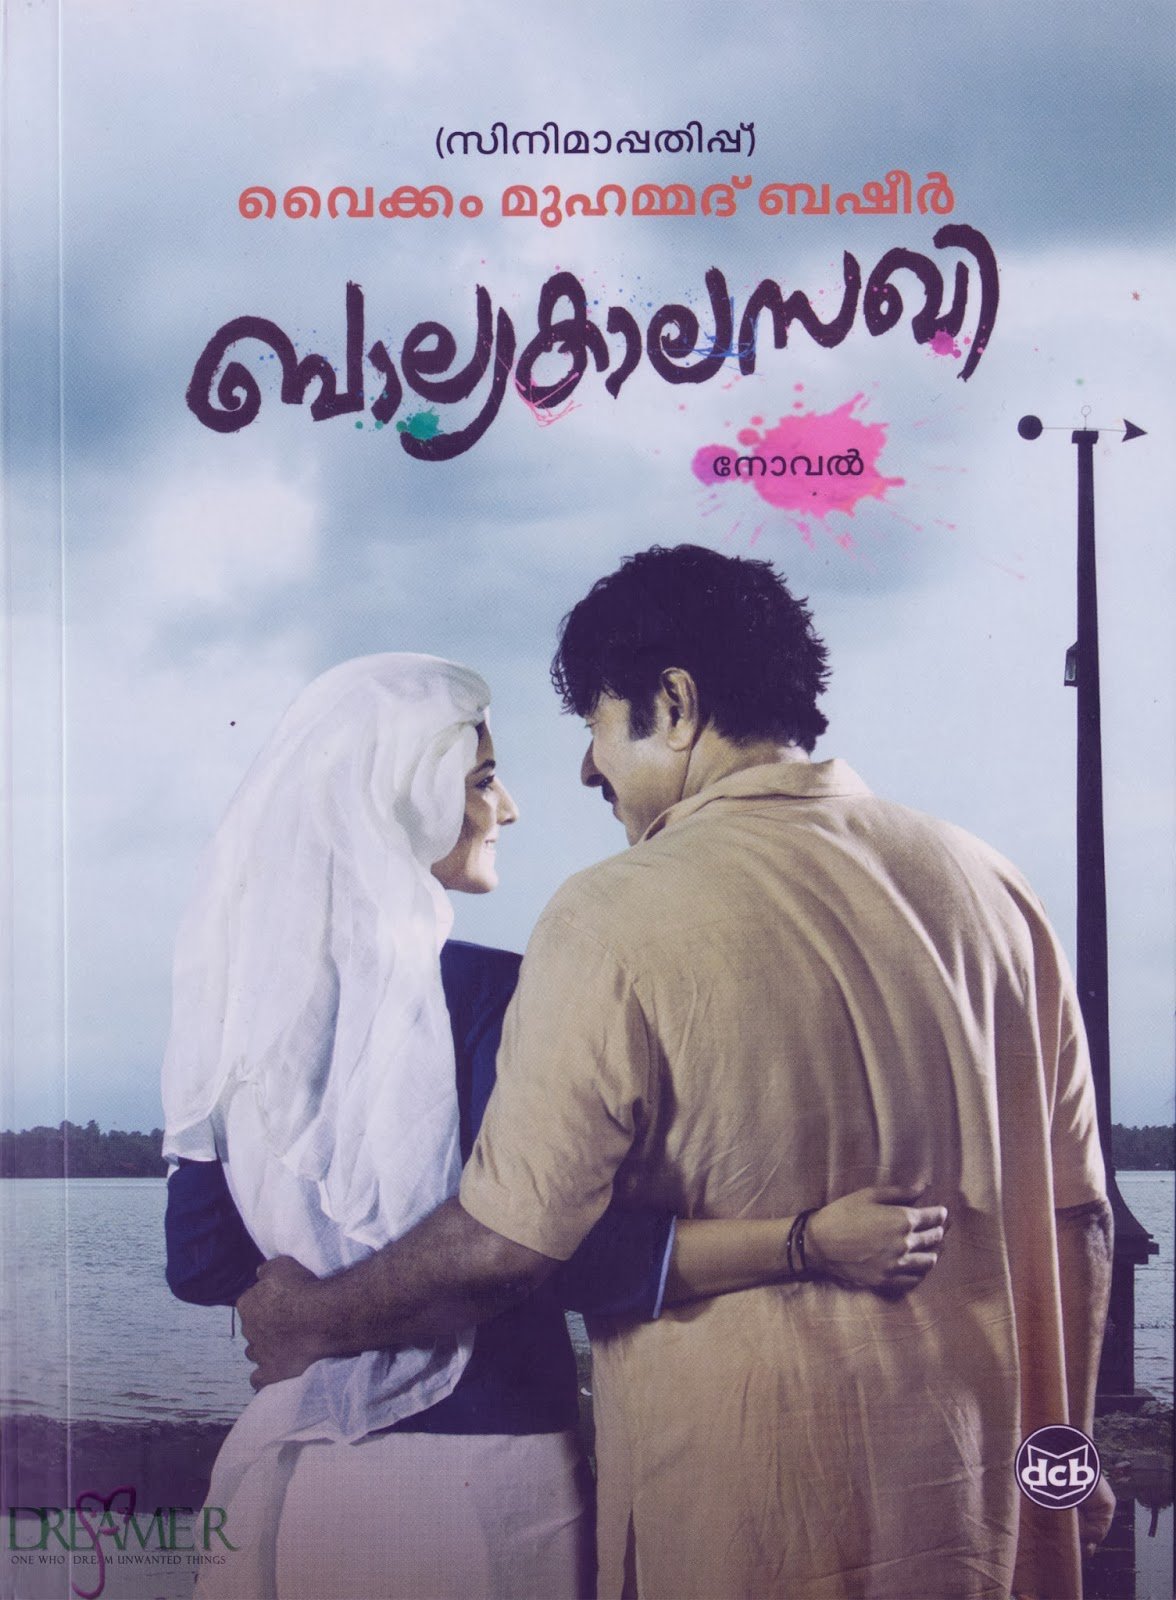 Malayalam poster of the movie Balyakalasakhi